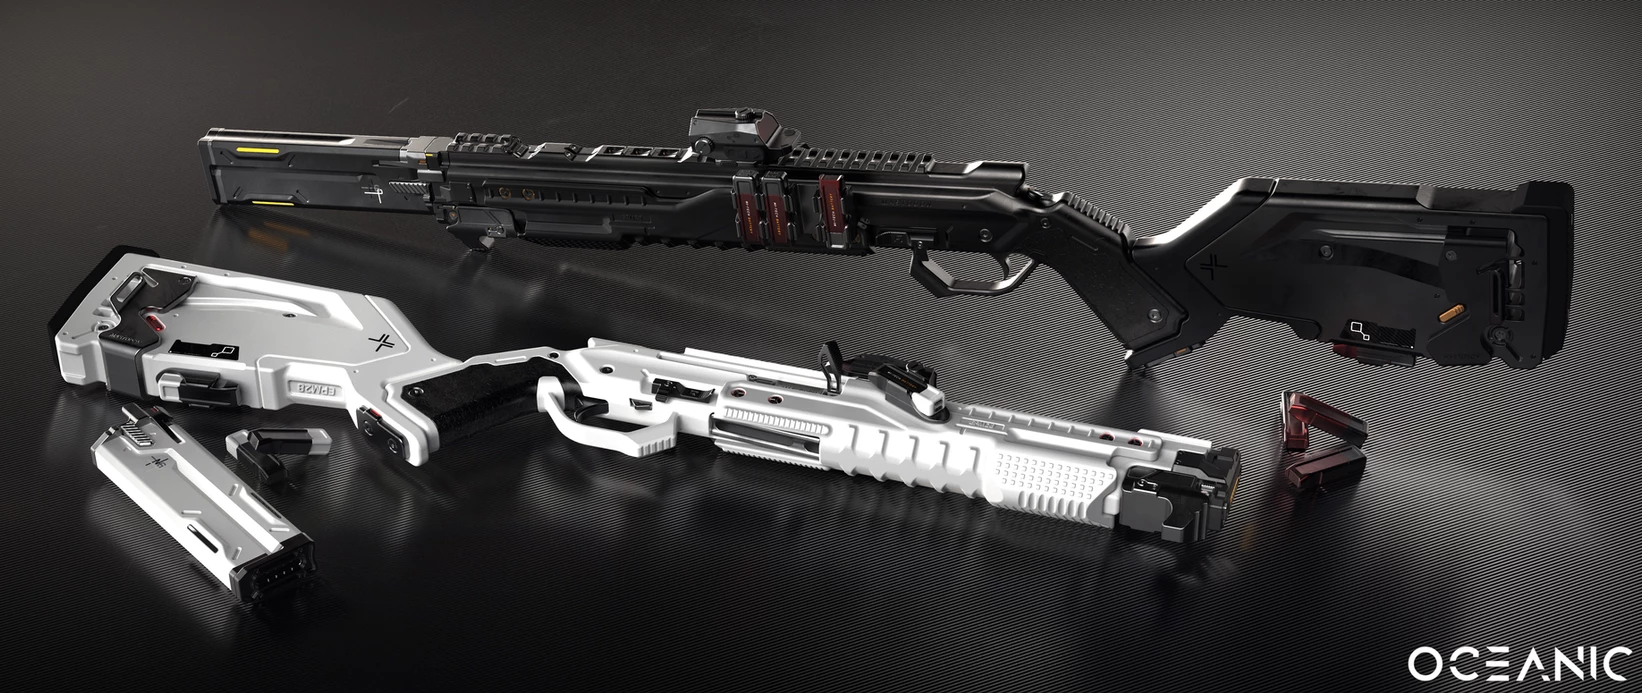 AK厂商新枪涉嫌抄袭游戏枪械设计